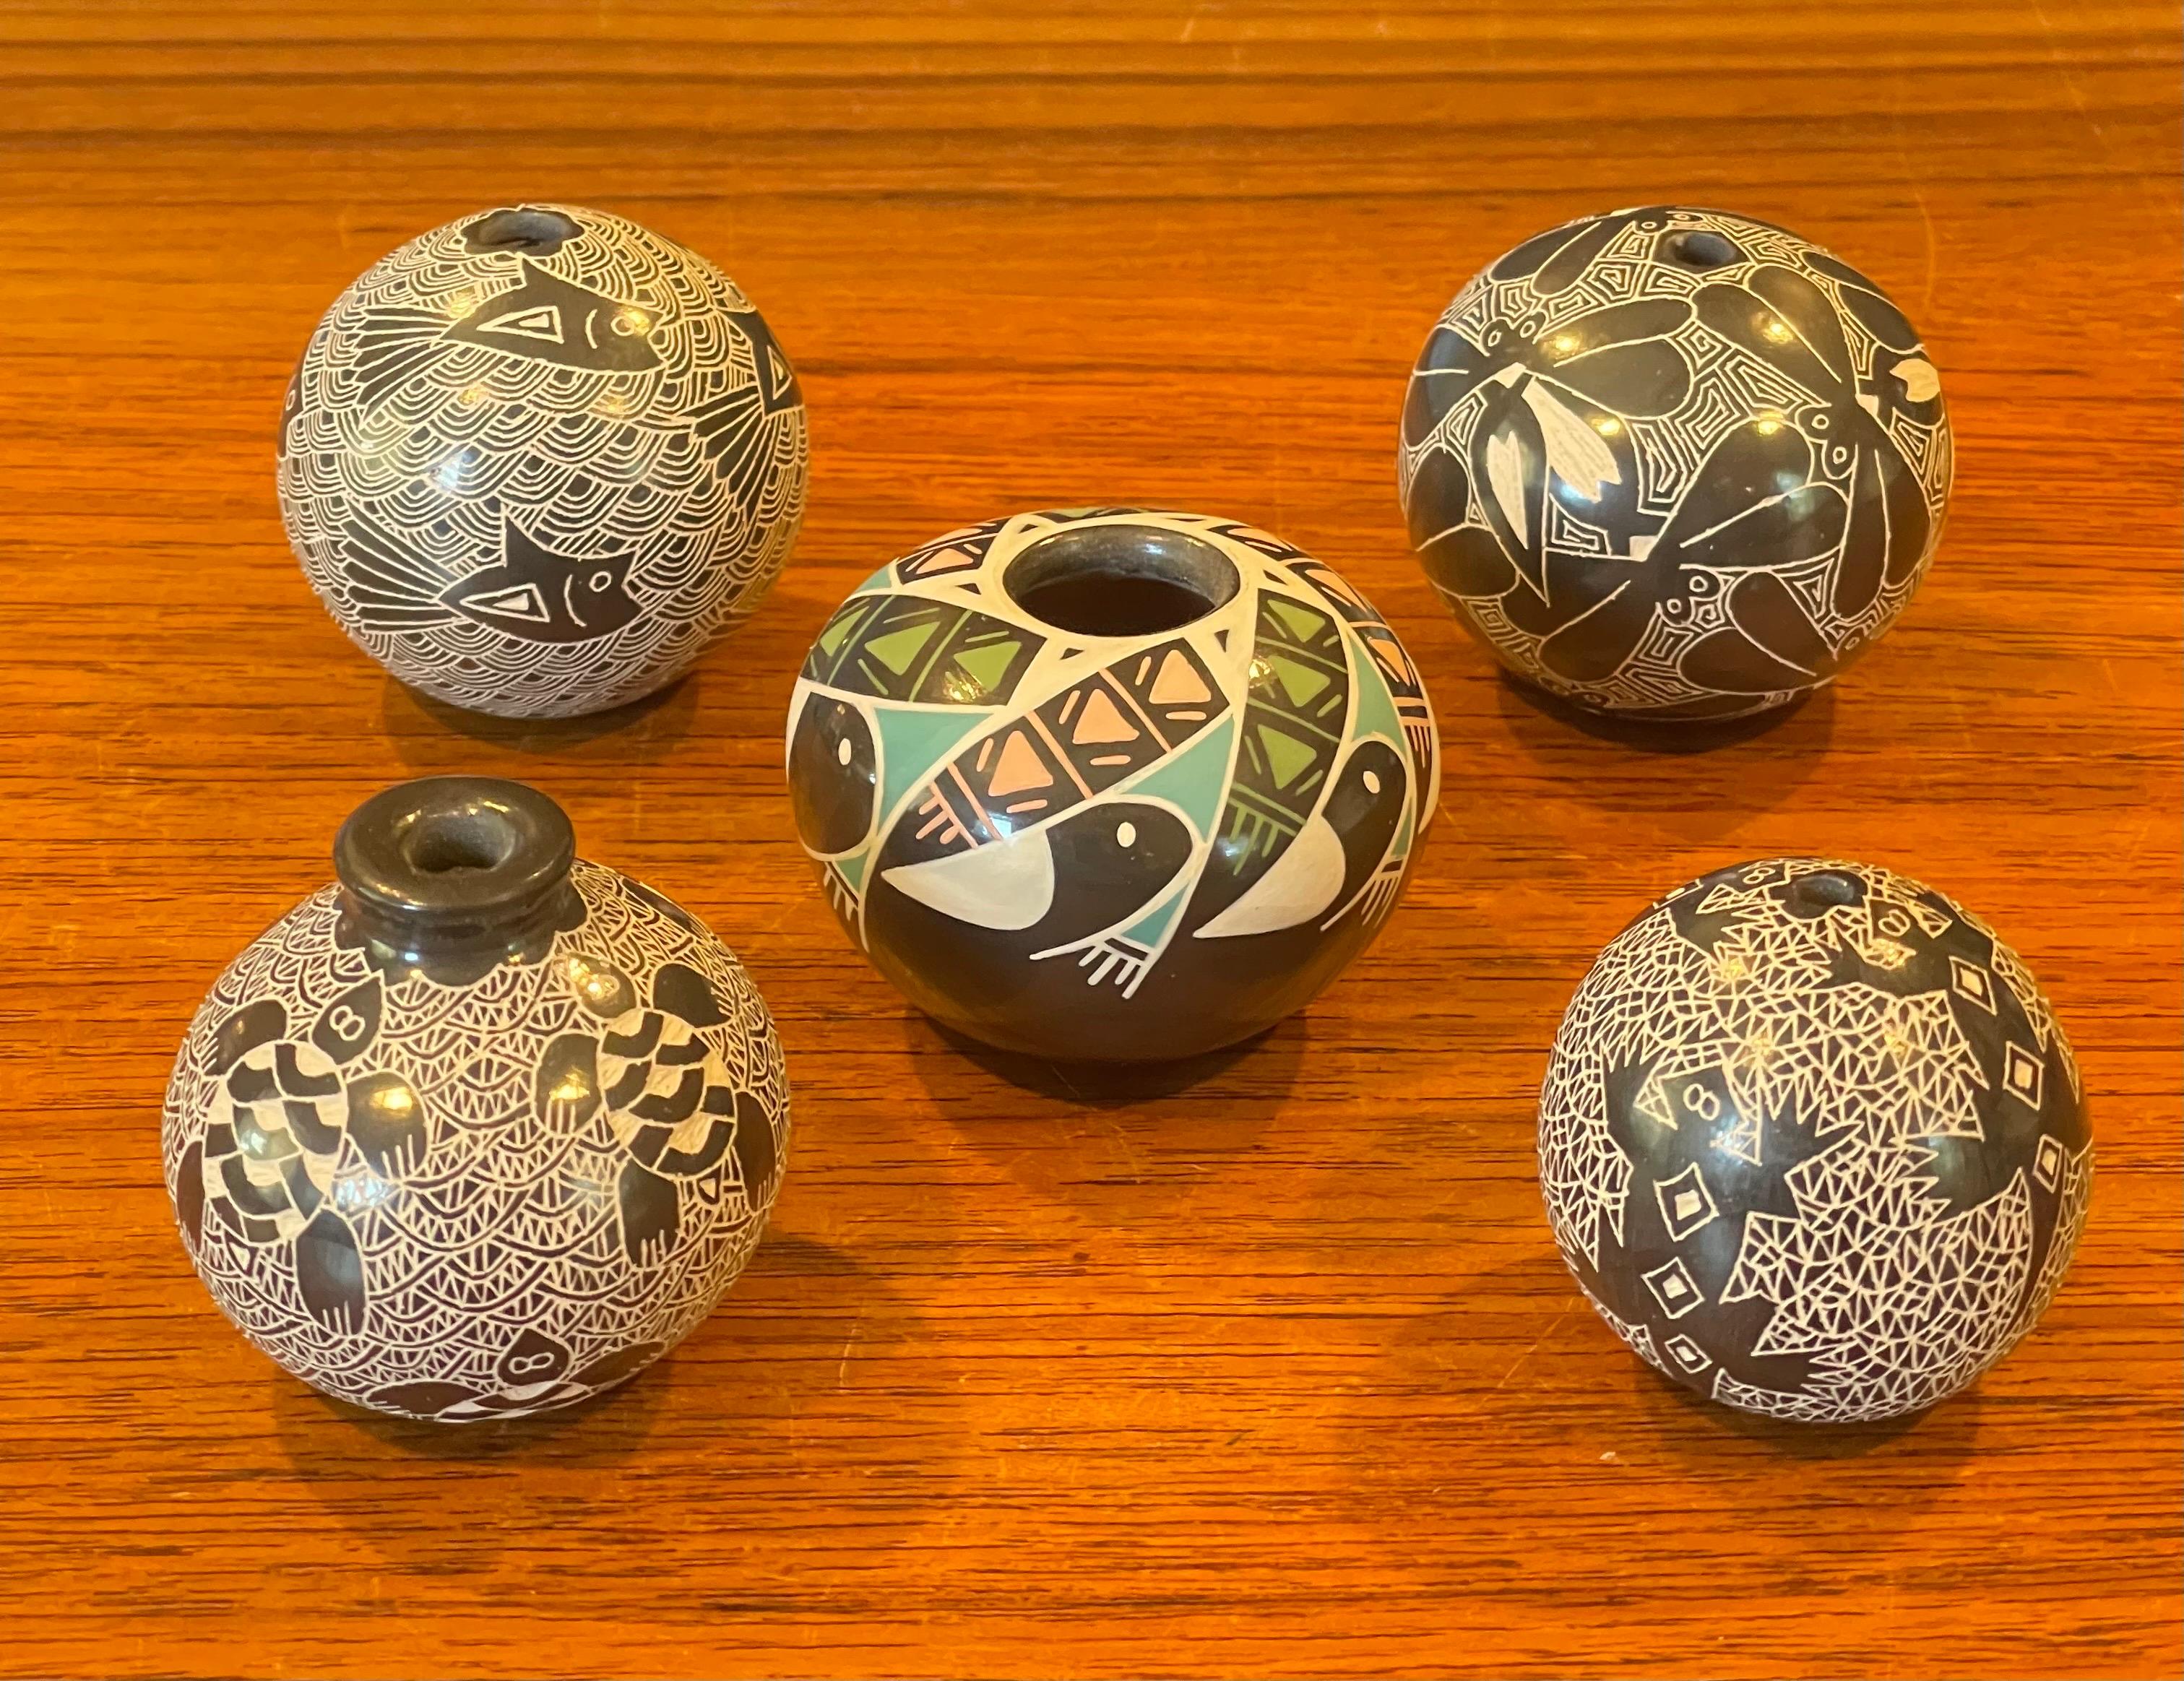 Très belle collection de cinq ollas / pots de semences miniatures en poterie Mata Ortiz, vers les années 1990. Chaque pot présente des détails exquis et est signé sur la face inférieure.  Ils sont en très bon état, sans éclats ni fissures et